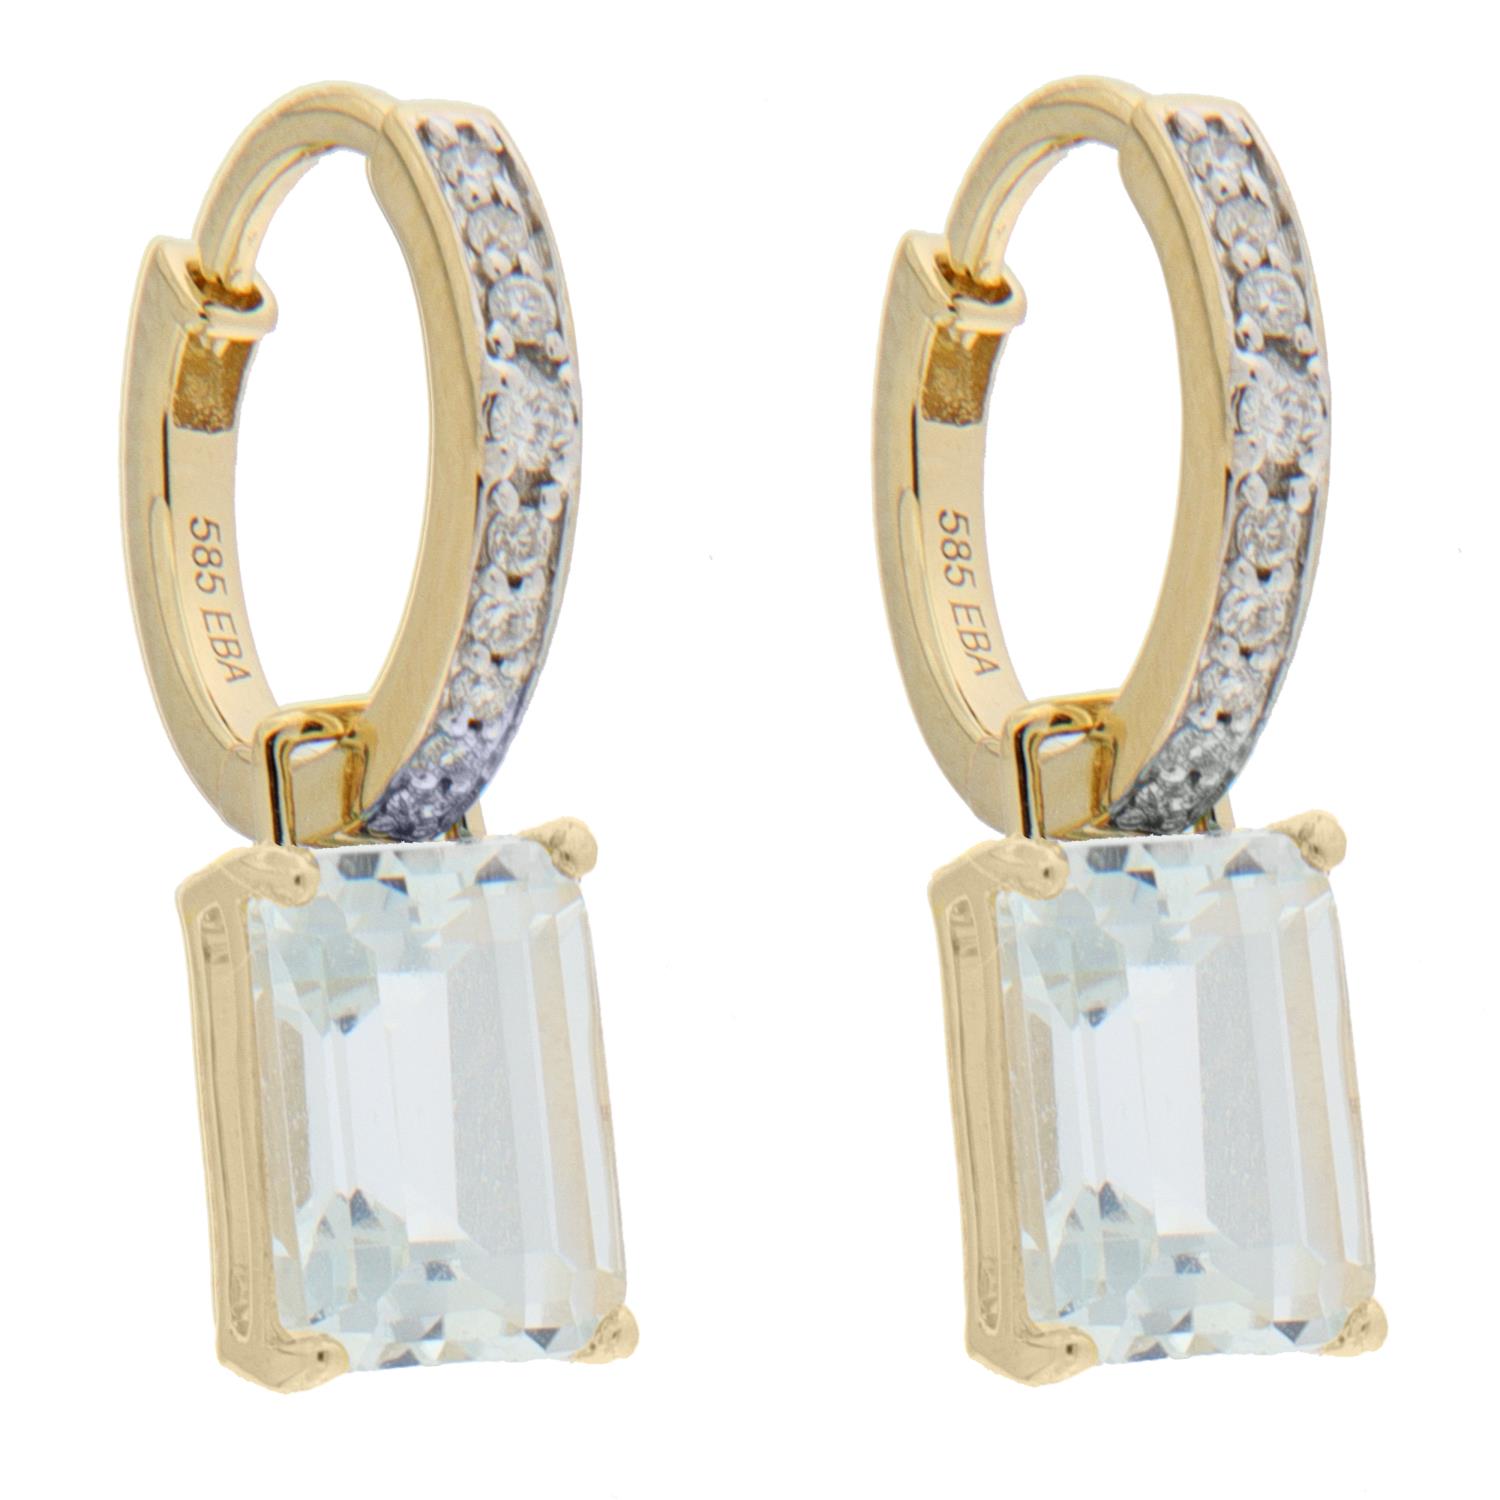 Ørering gull 10ø 0,10ct TWSI diamanter på ørering + 2,20ct hvit topaz charms (Veil. 8690,-)